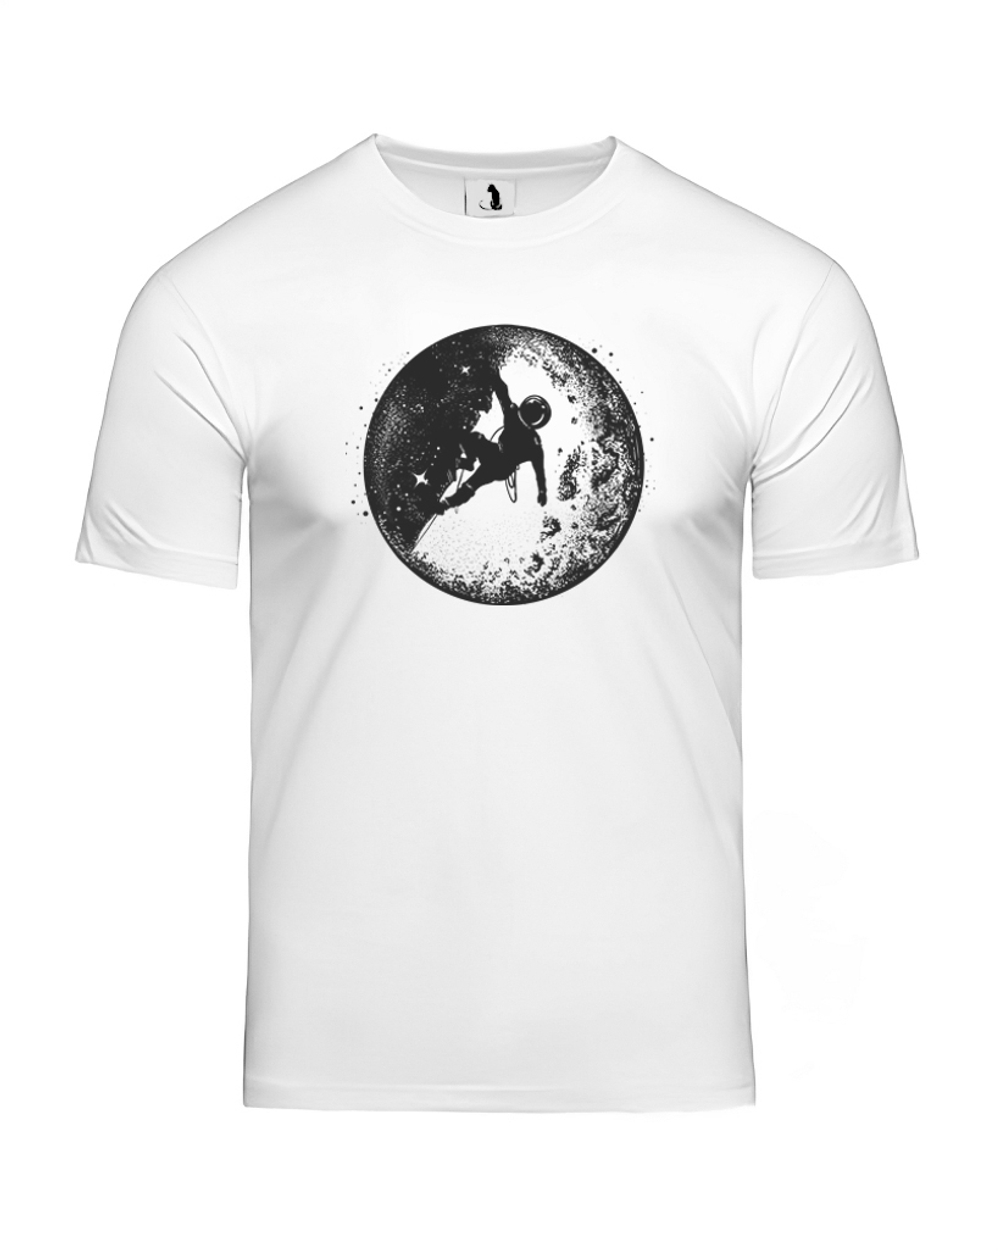 Футболка Космонавт на Луне unisex белая с черным рисунком